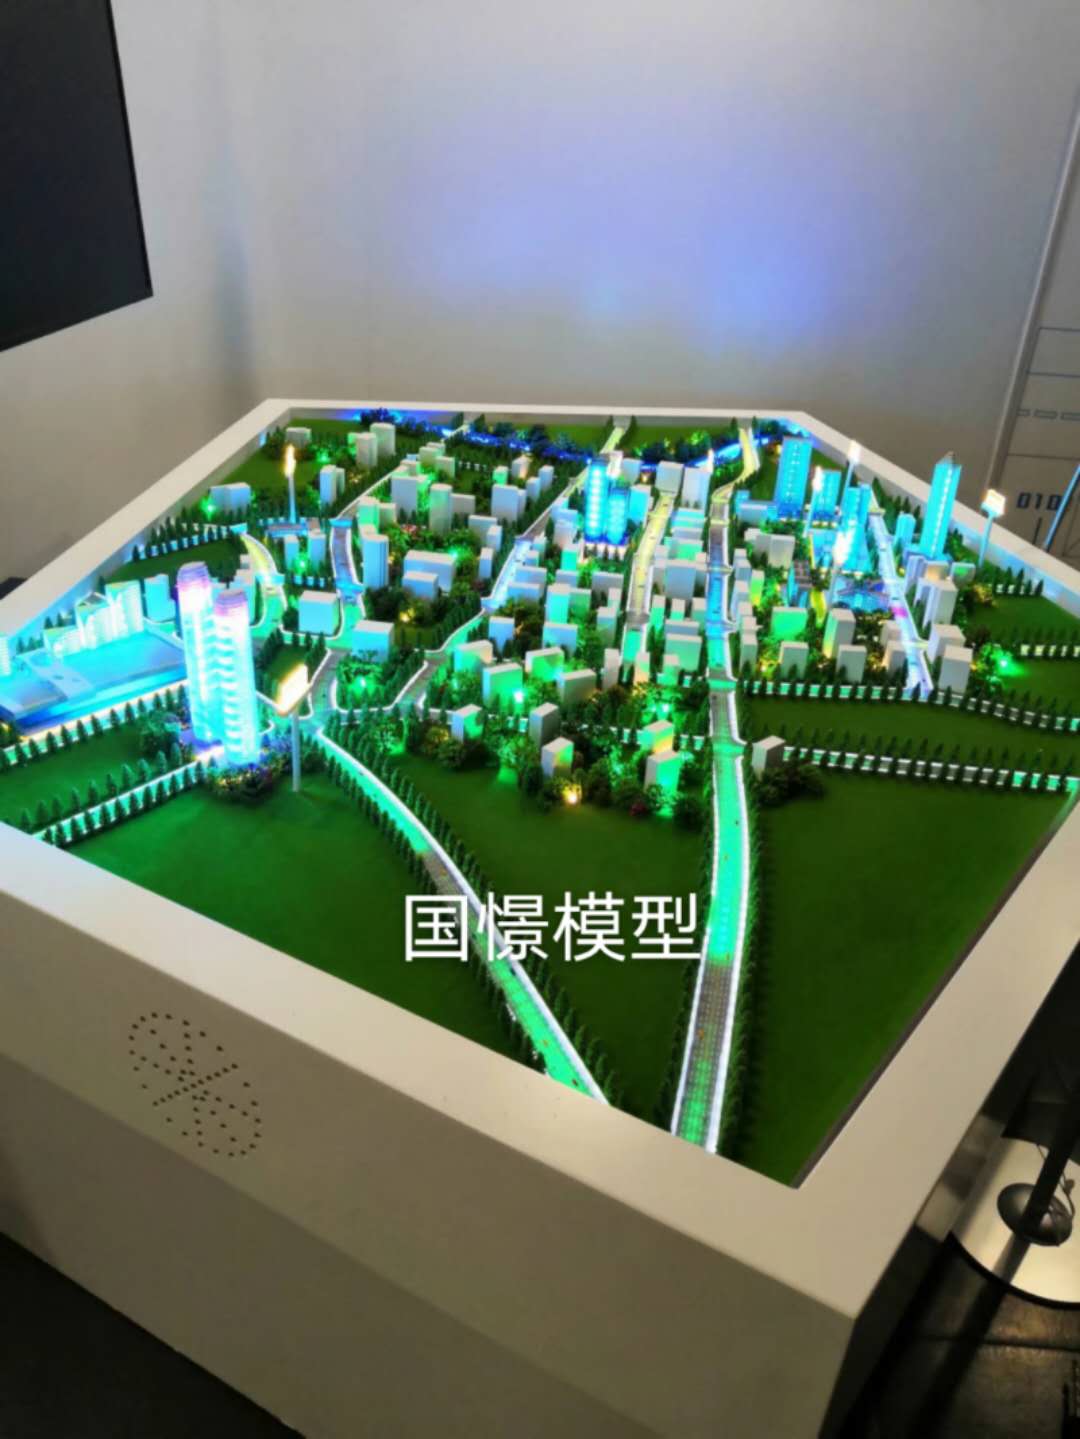 石屏县建筑模型